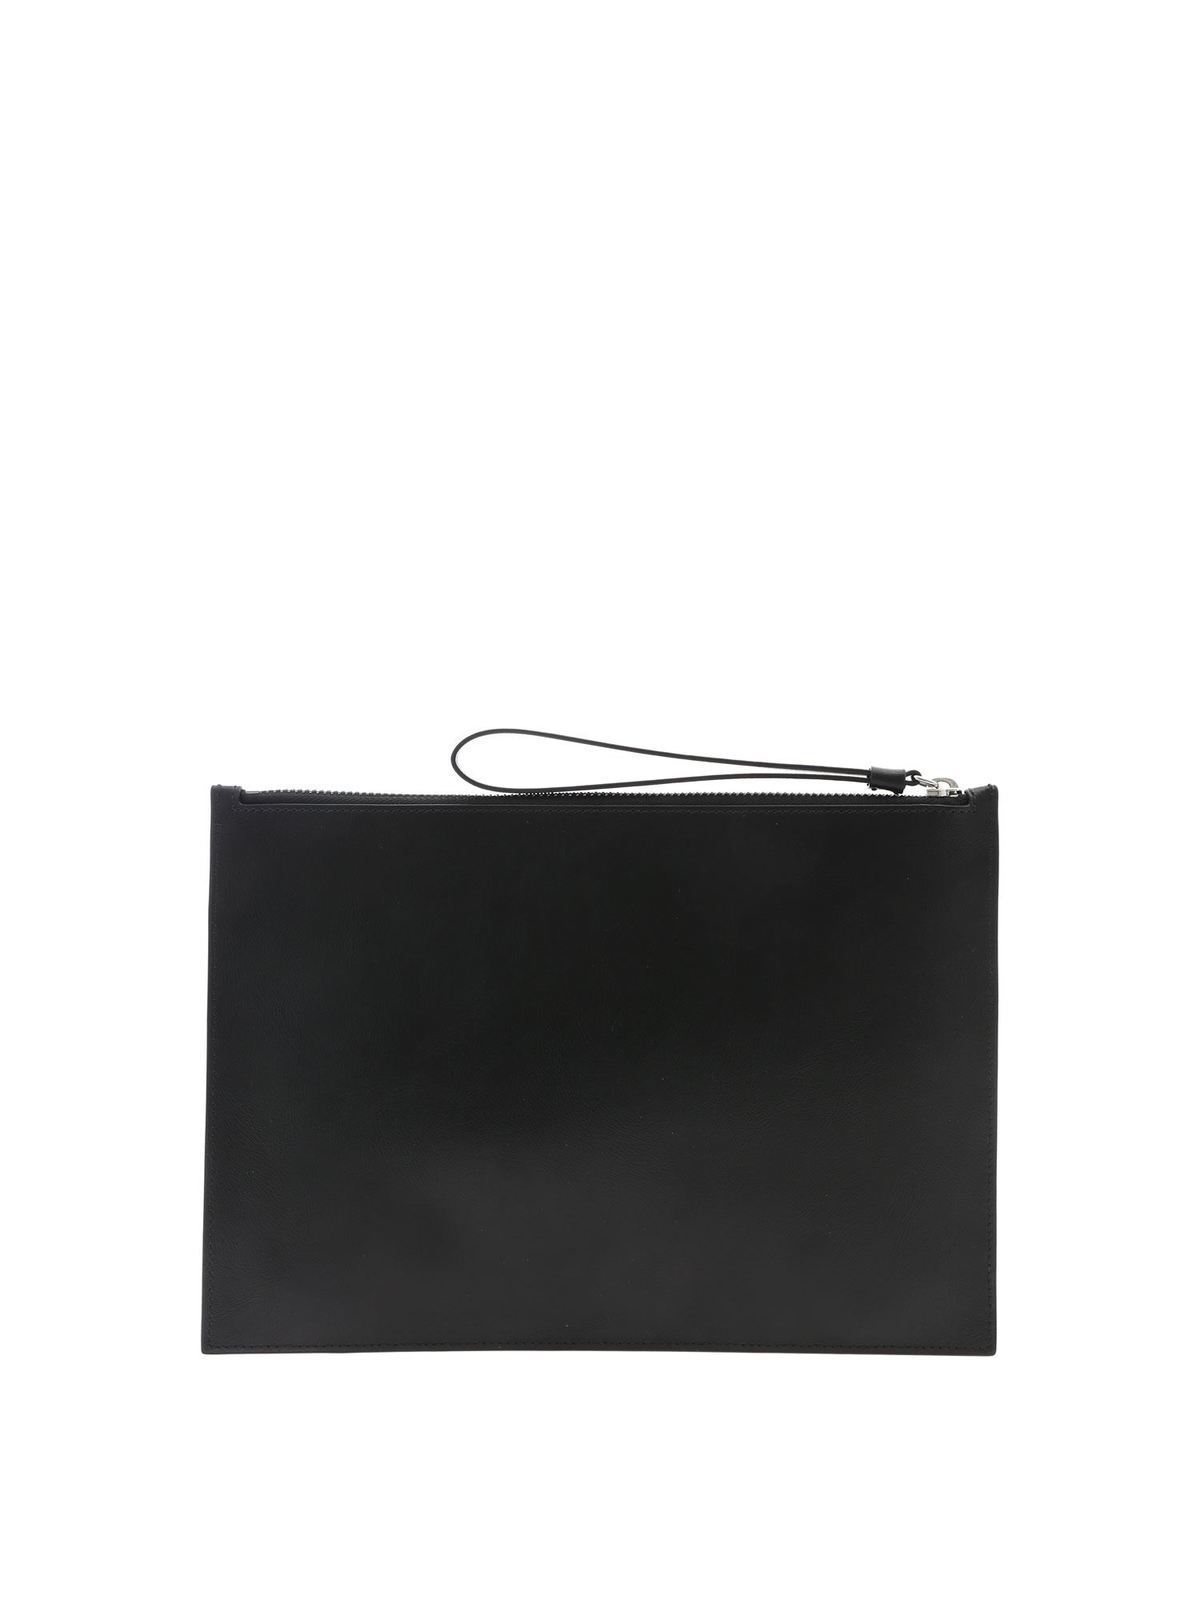 Clutches Kenzo - Kenzo Kontrast A4 clutch bag in black - 5PM502L3699